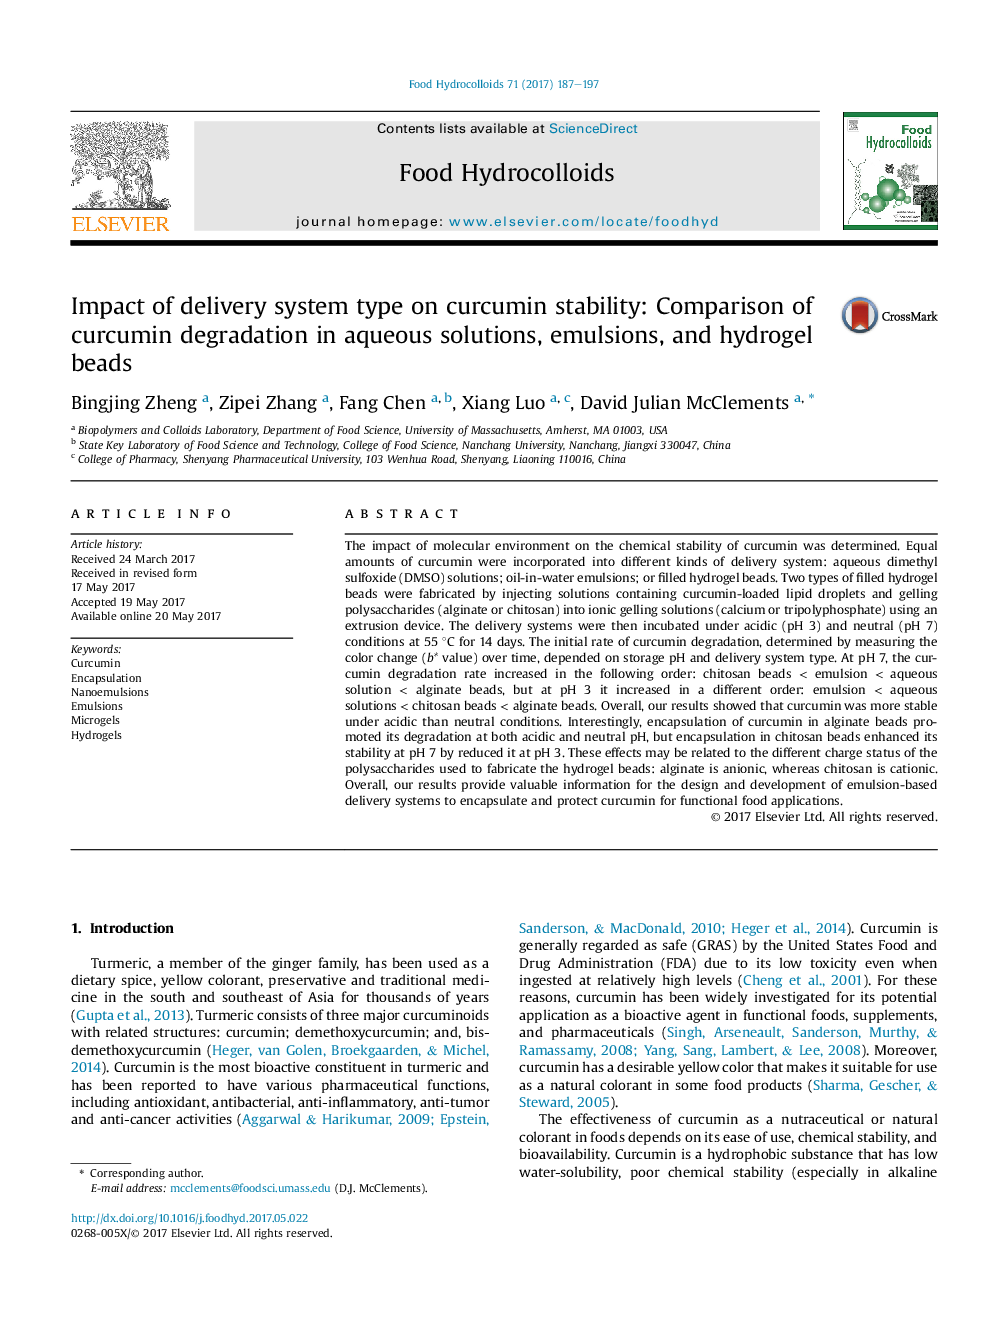 تأثیر نوع سیستم تحویل در پایداری کورکومین: مقایسه تخریب کورکومین در محلول های آبی، امولسیون ها و دانه های هیدروژل 